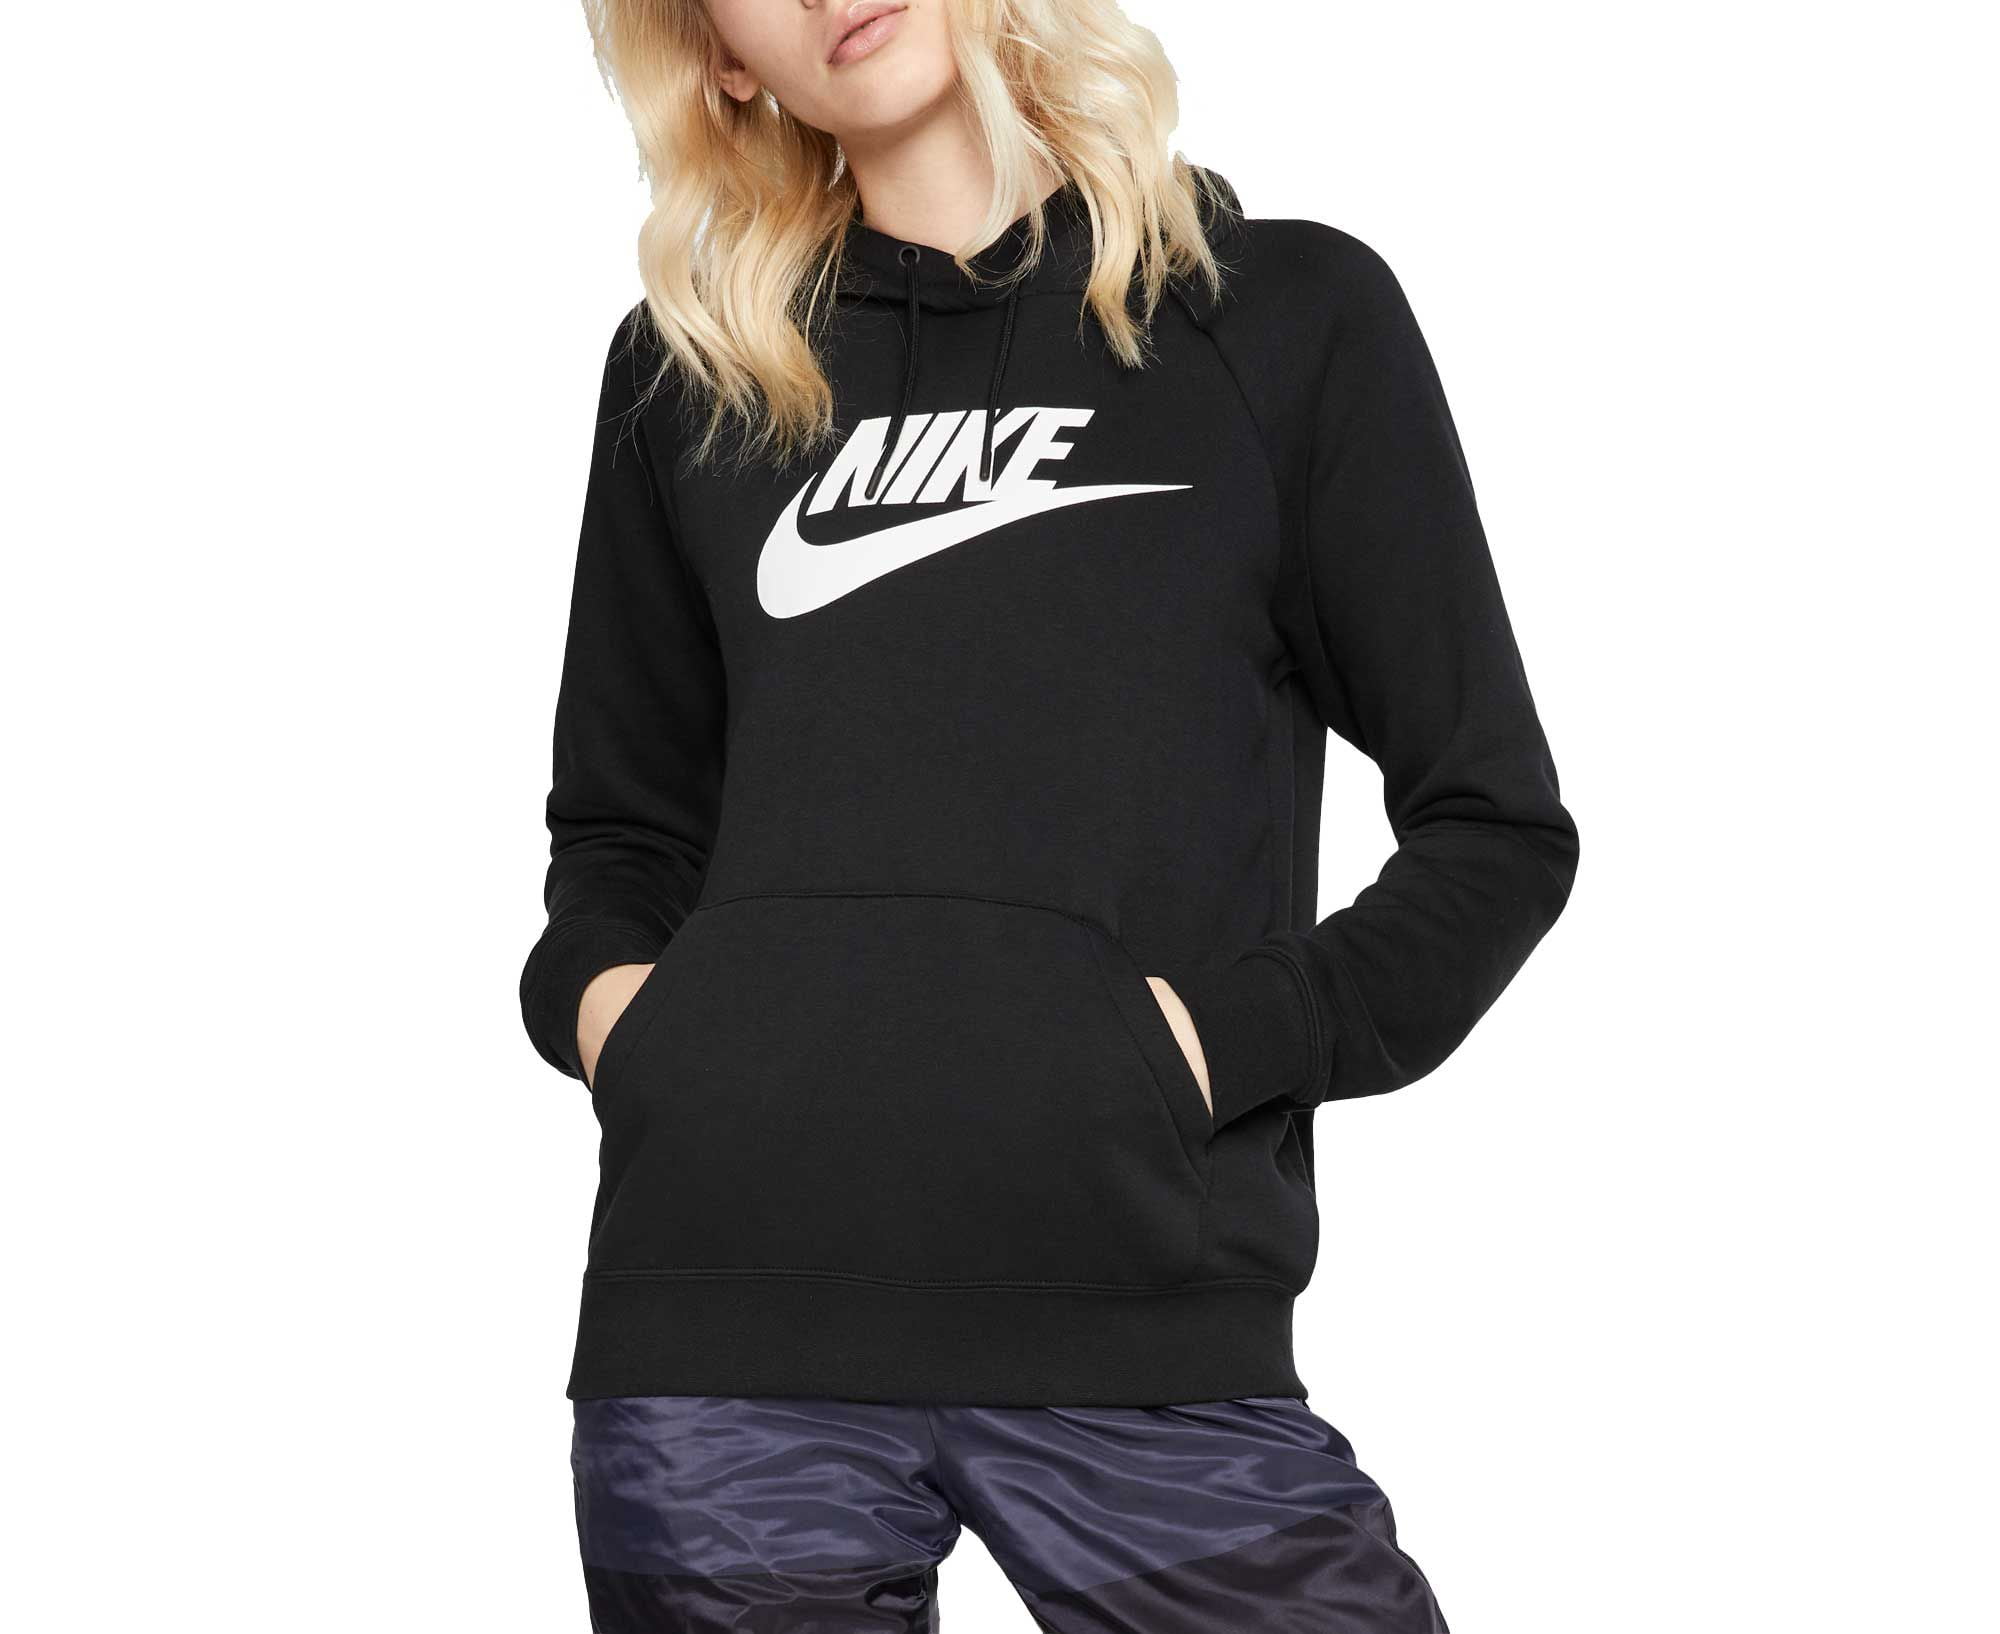 La oficina Escrupuloso escapar Nike Sportswear Women's Essential Fleece Pullover Hoodie - Walmart.com